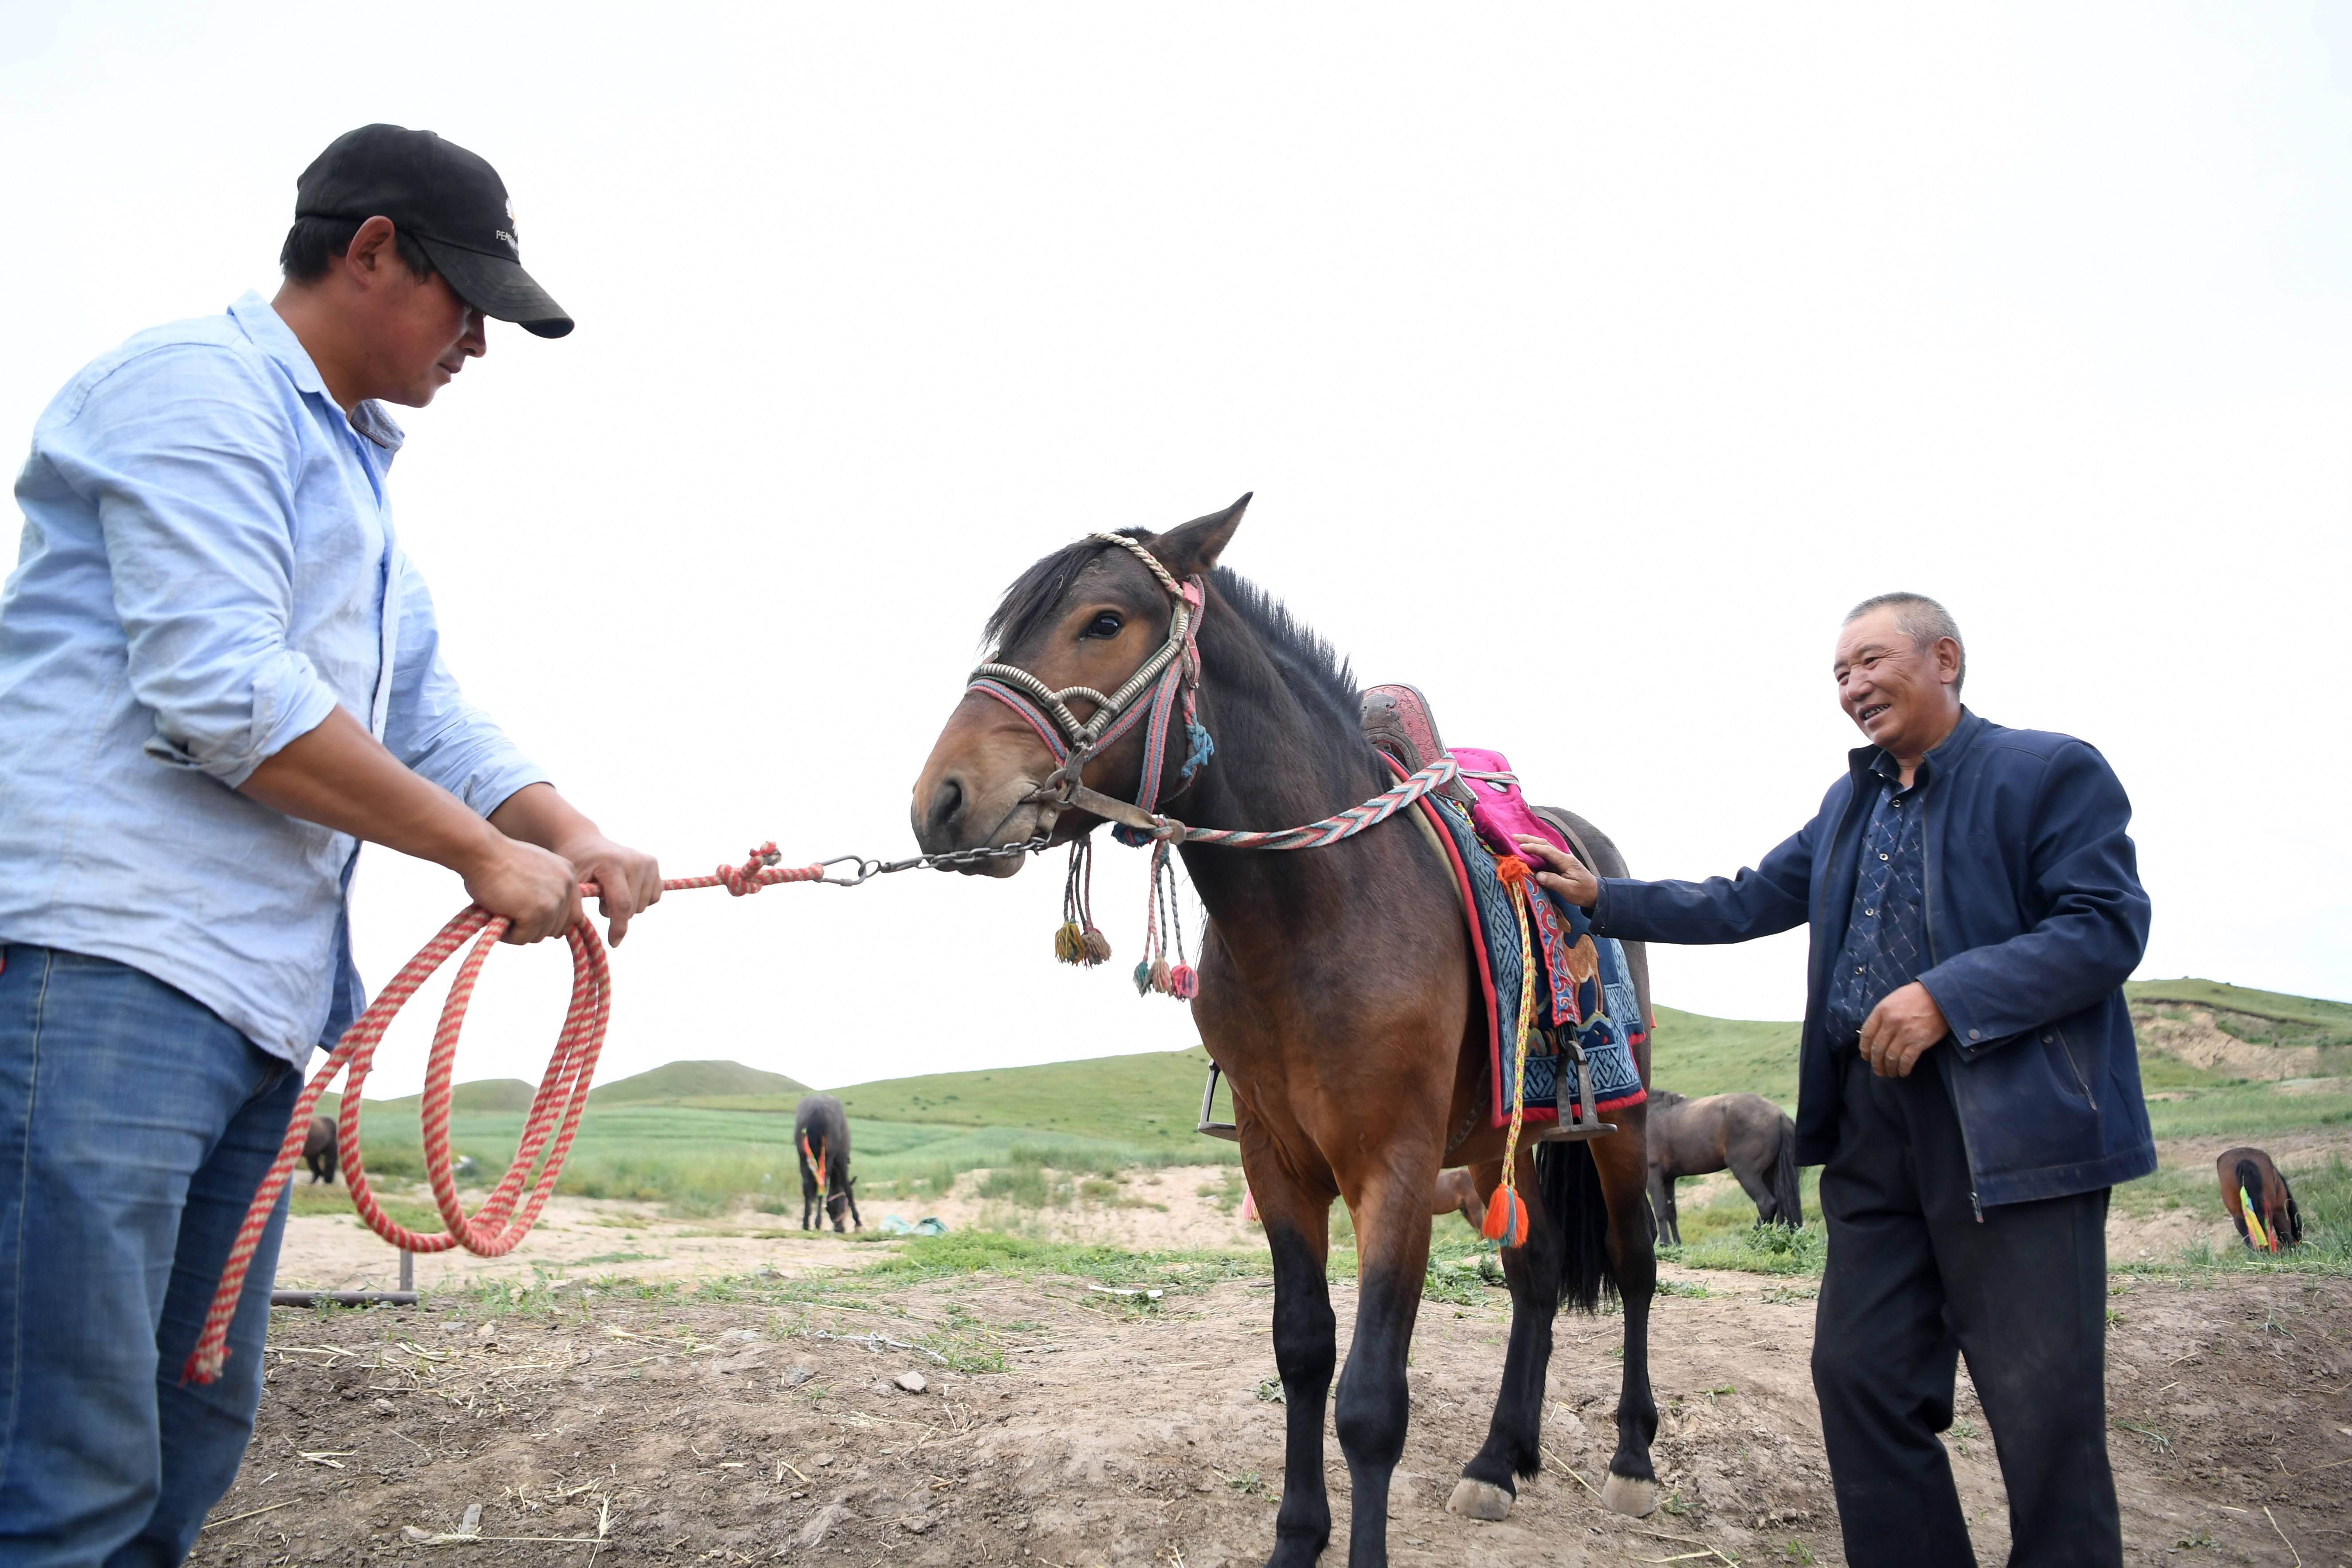 8月3日,李怀智(右)和儿子给一匹马套上马鞍准备去训练.